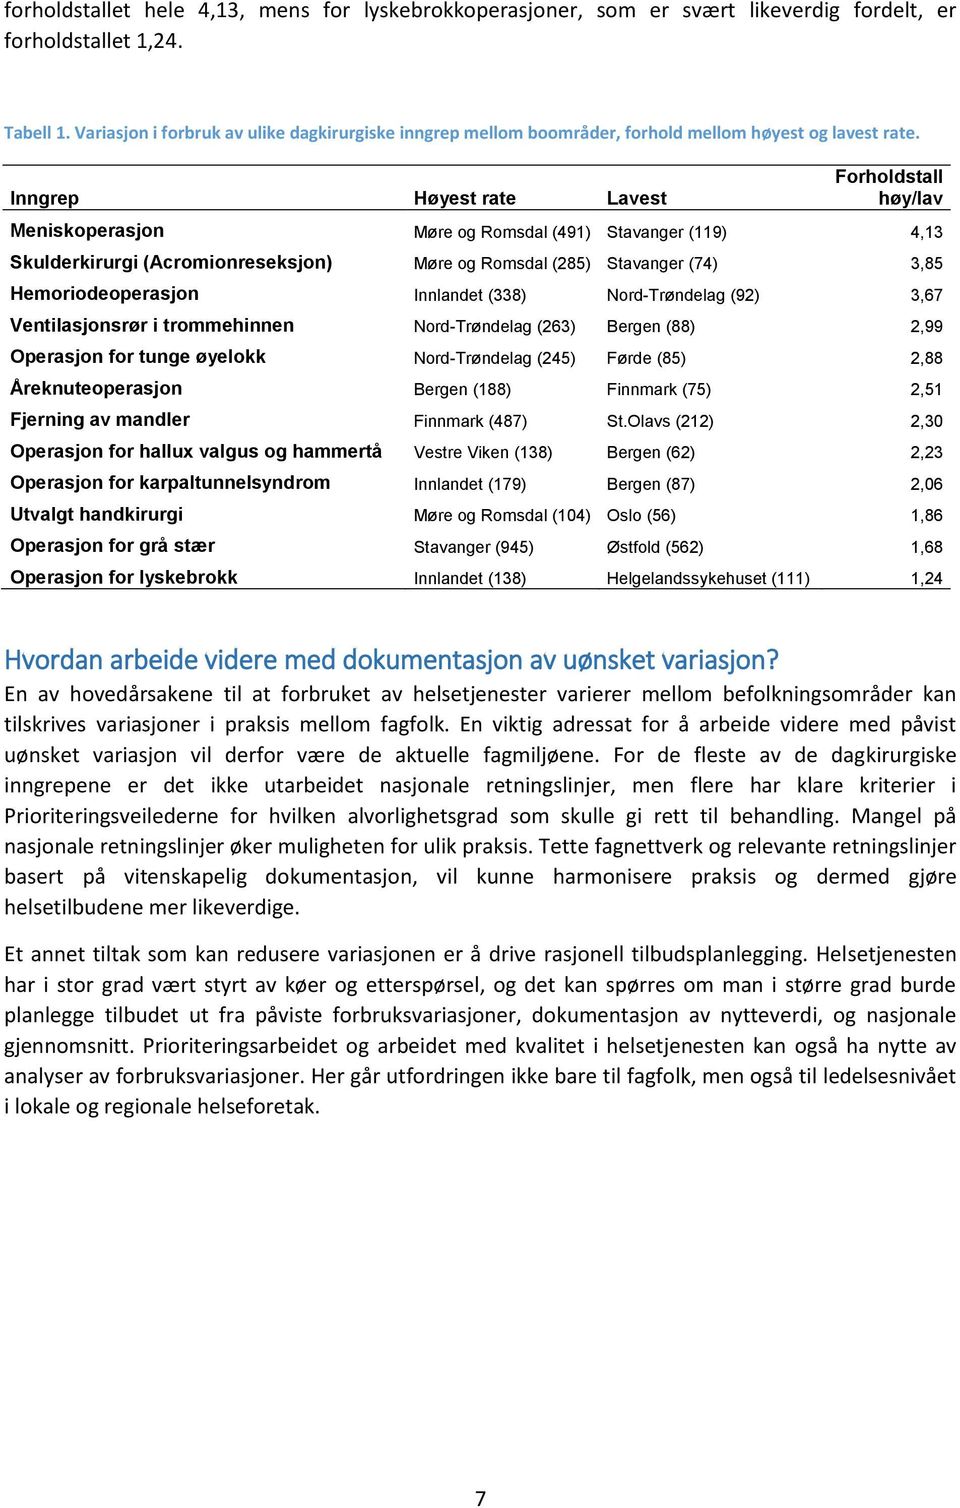 Inngrep Høyest rate Lavest Forholdstall høy/lav Meniskoperasjon Møre og Romsdal (491) Stavanger (119) 4,13 Skulderkirurgi (Acromionreseksjon) Møre og Romsdal (285) Stavanger (74) 3,85